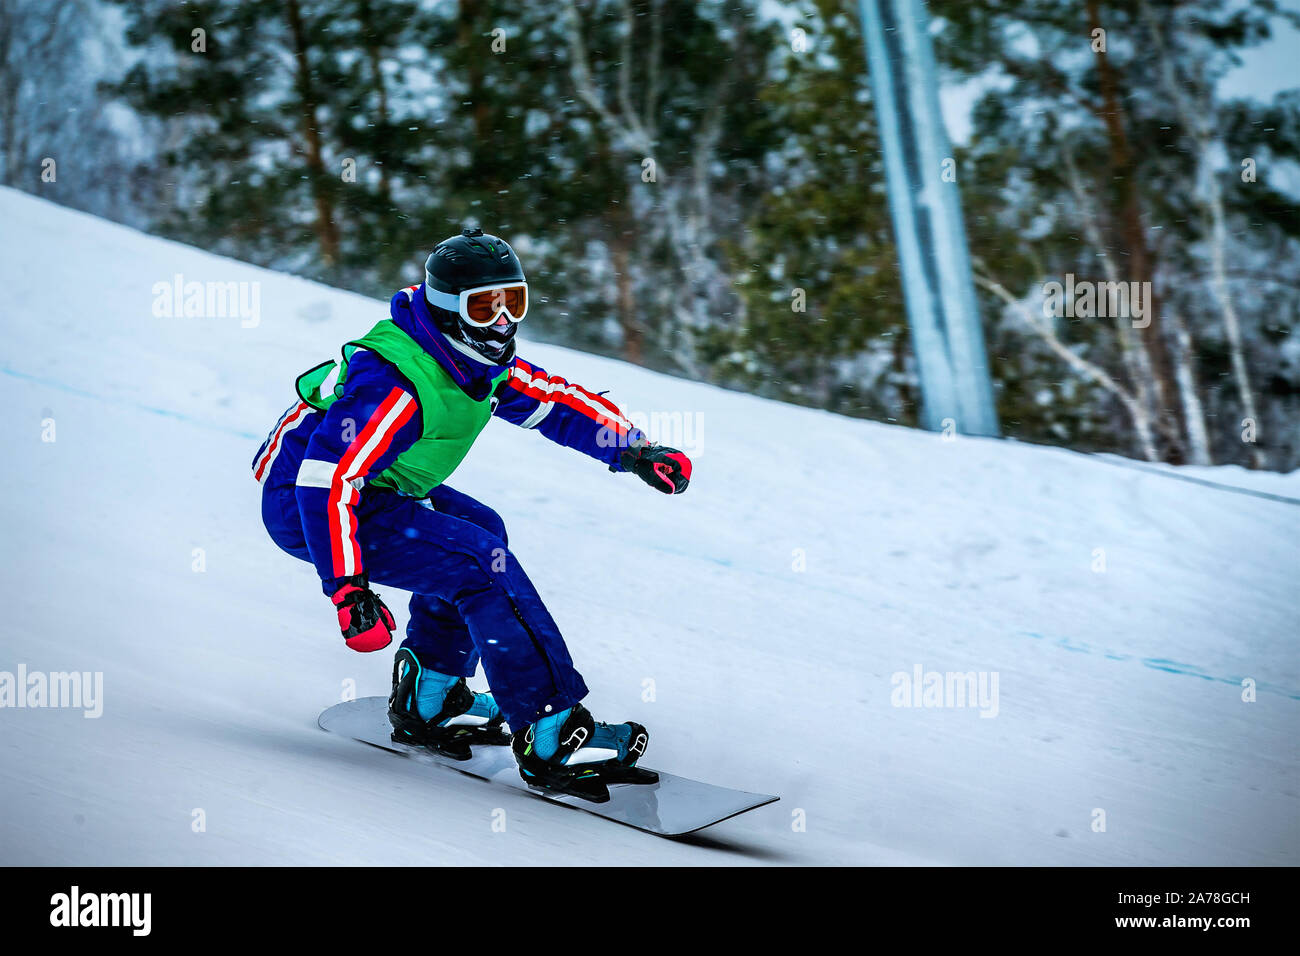 Remplir un rider masculins en snowboard downhill racing Banque D'Images